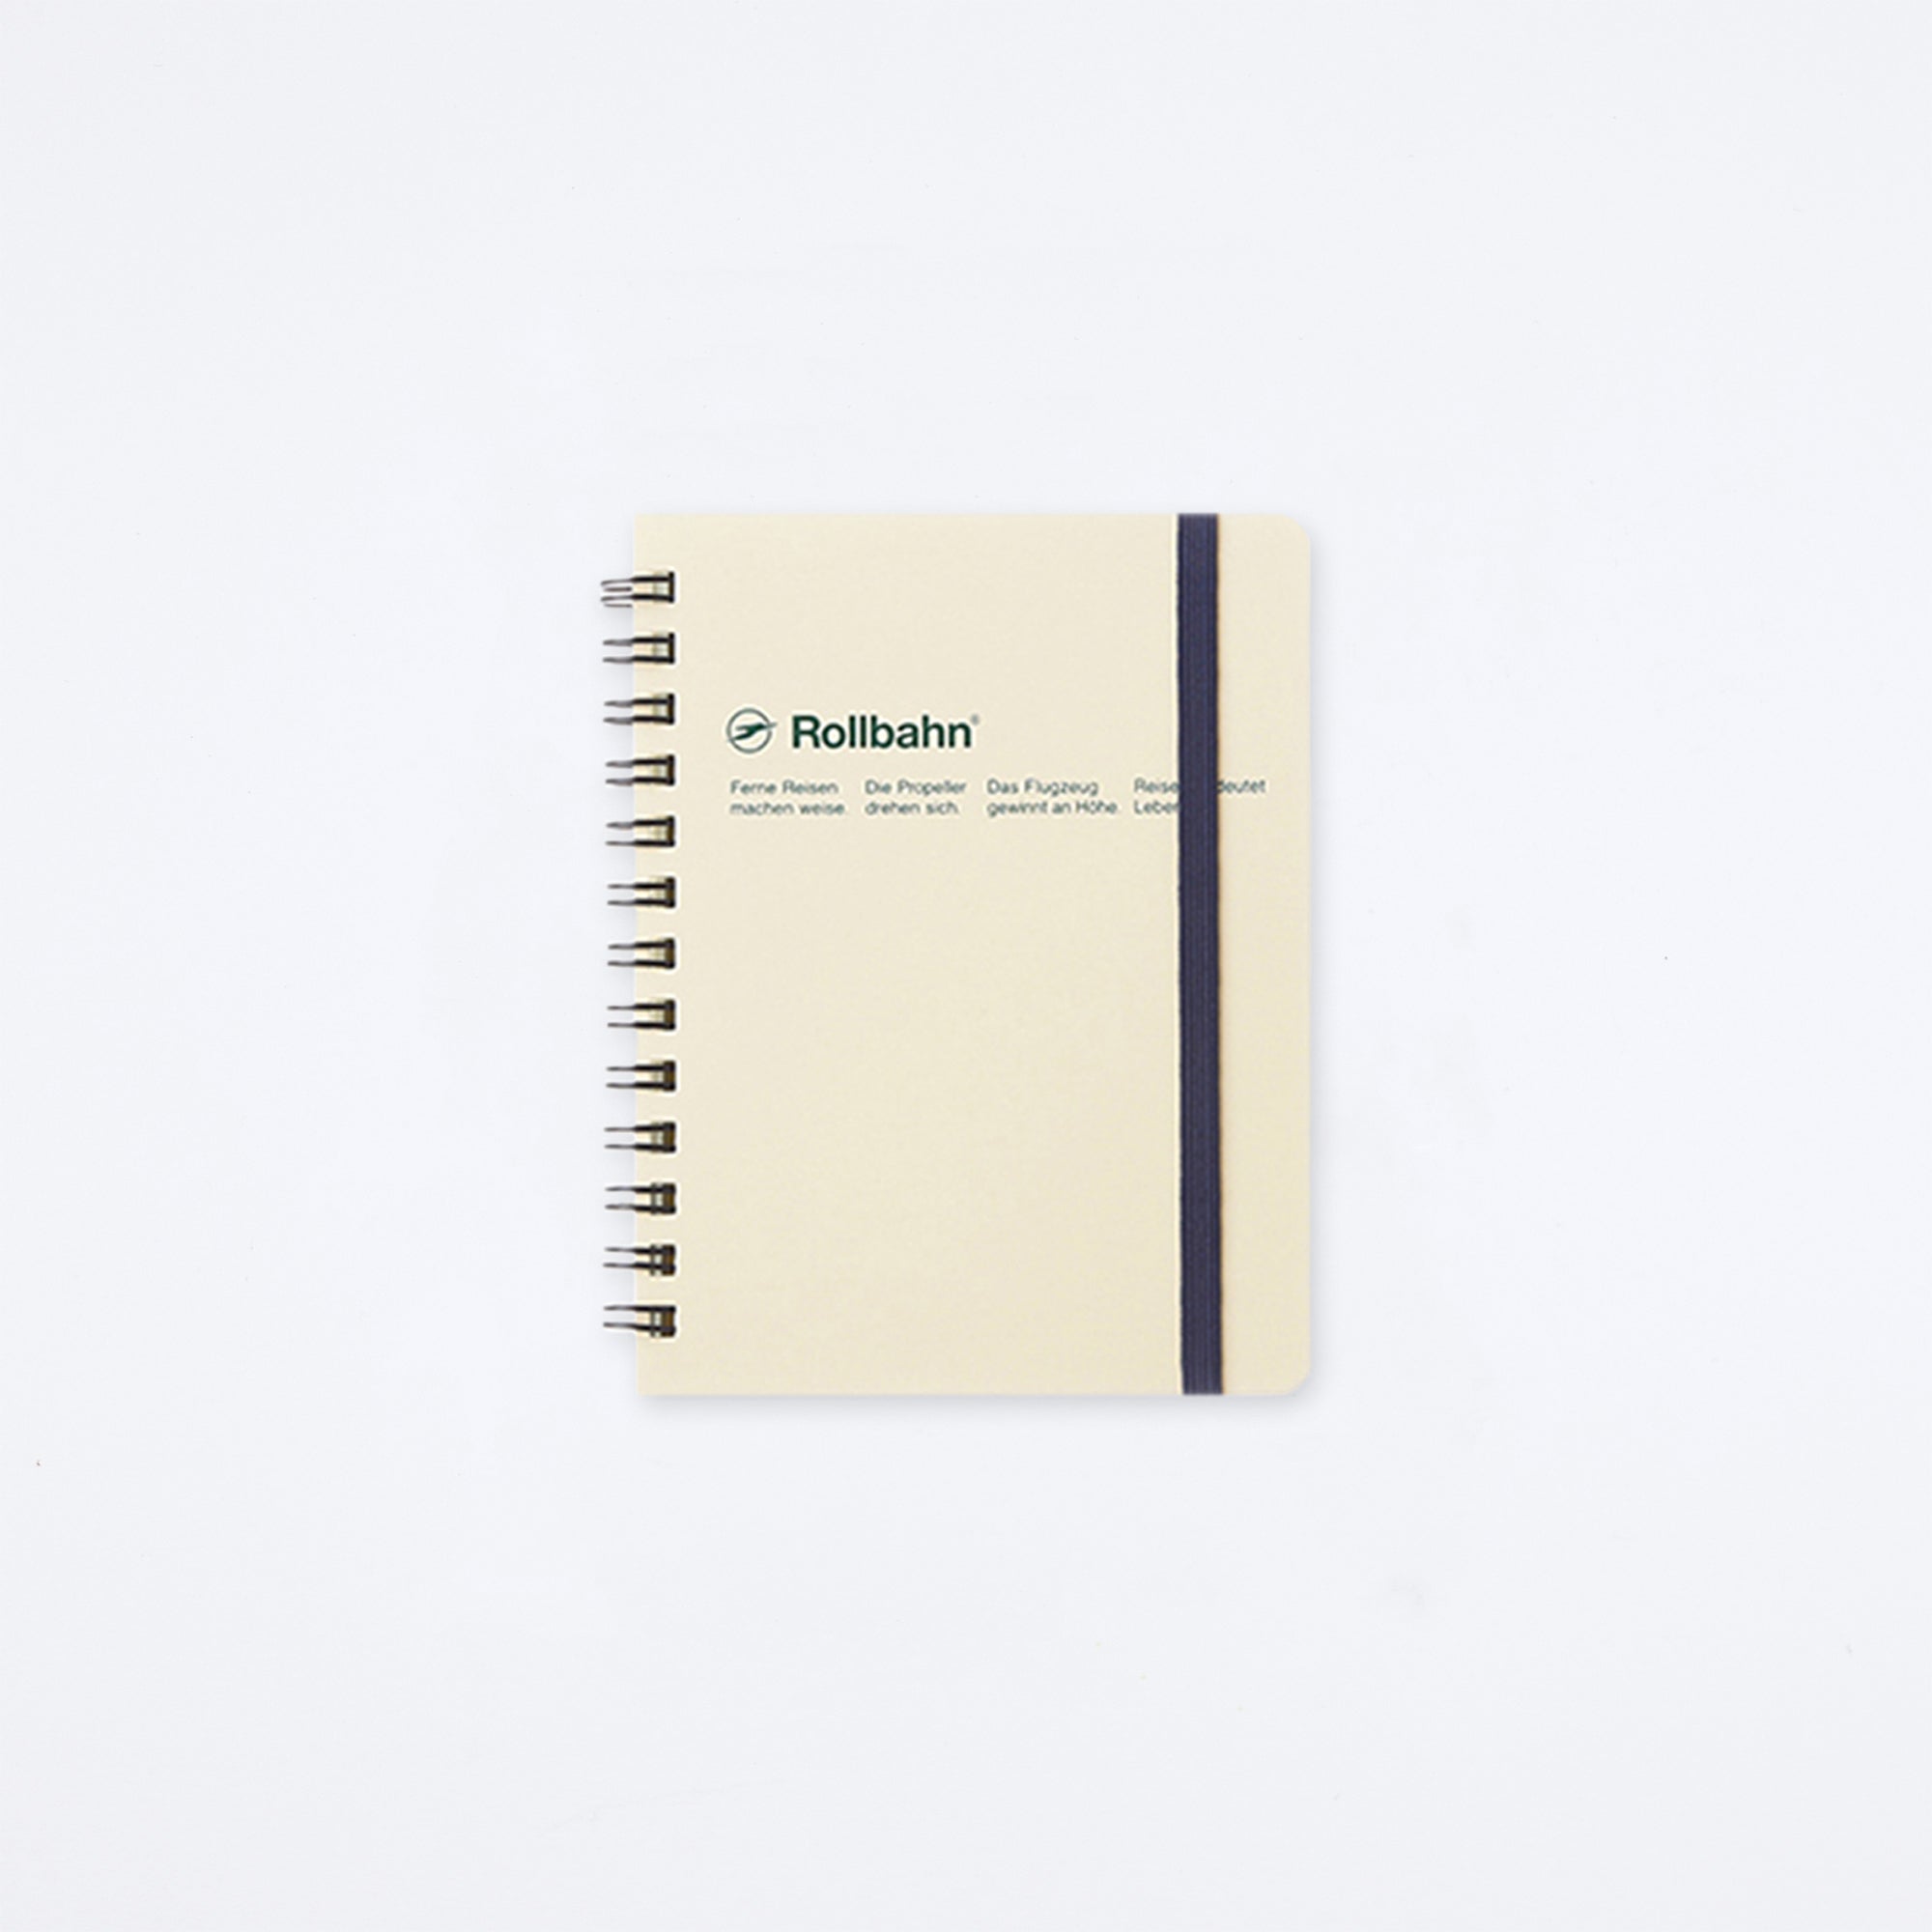 Rollbahn Spiral Pocket Memo Notebook